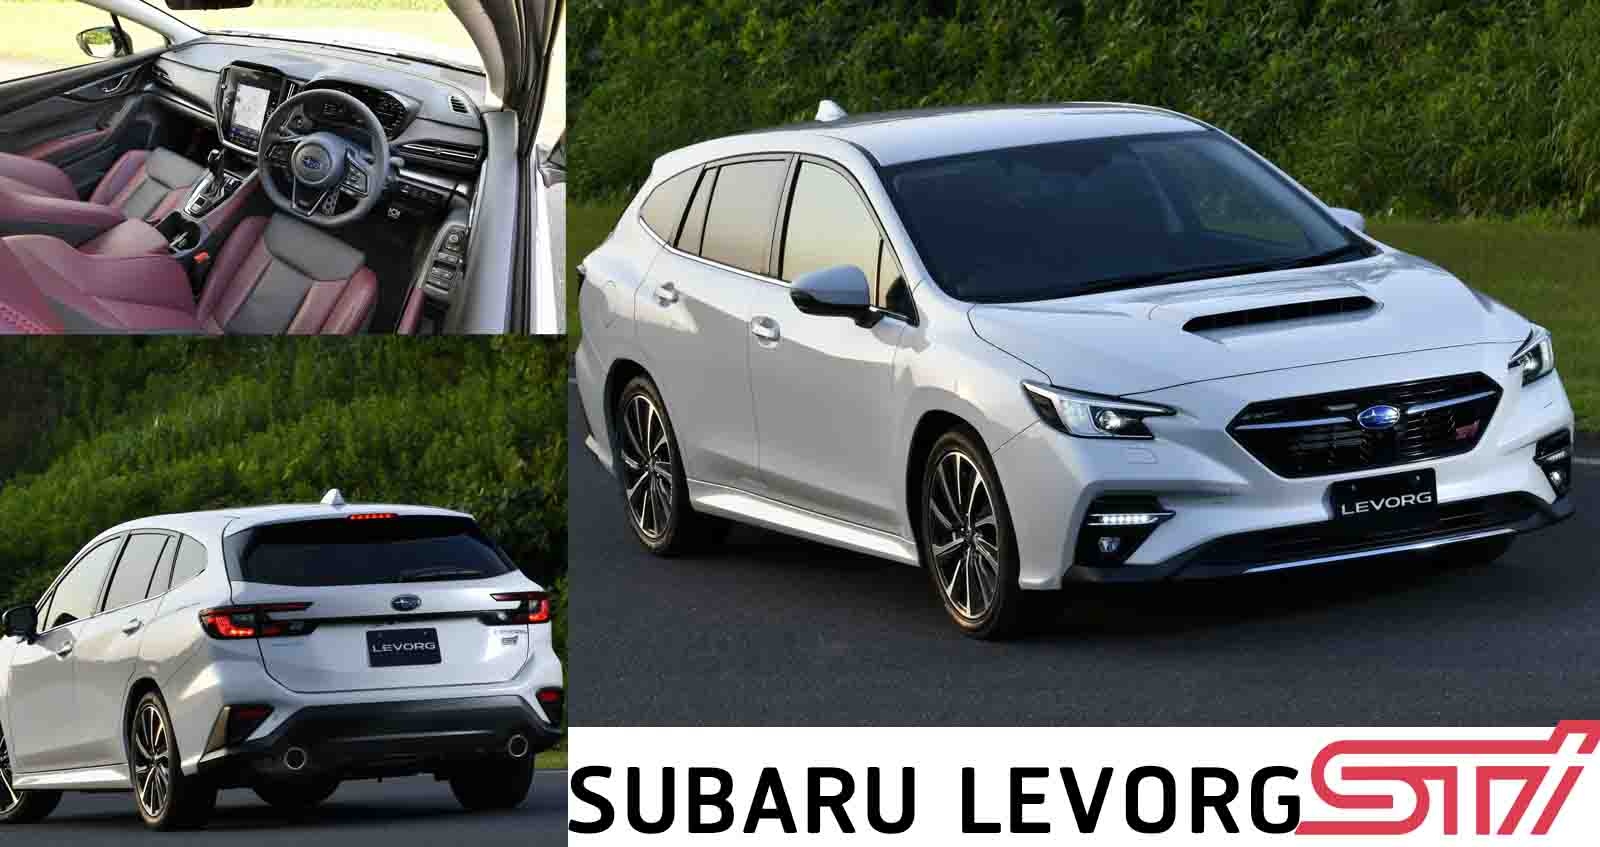 ภาพคันจริง NEW Subaru Levorg STi Sport แต่งสปอร์ตมากกว่า